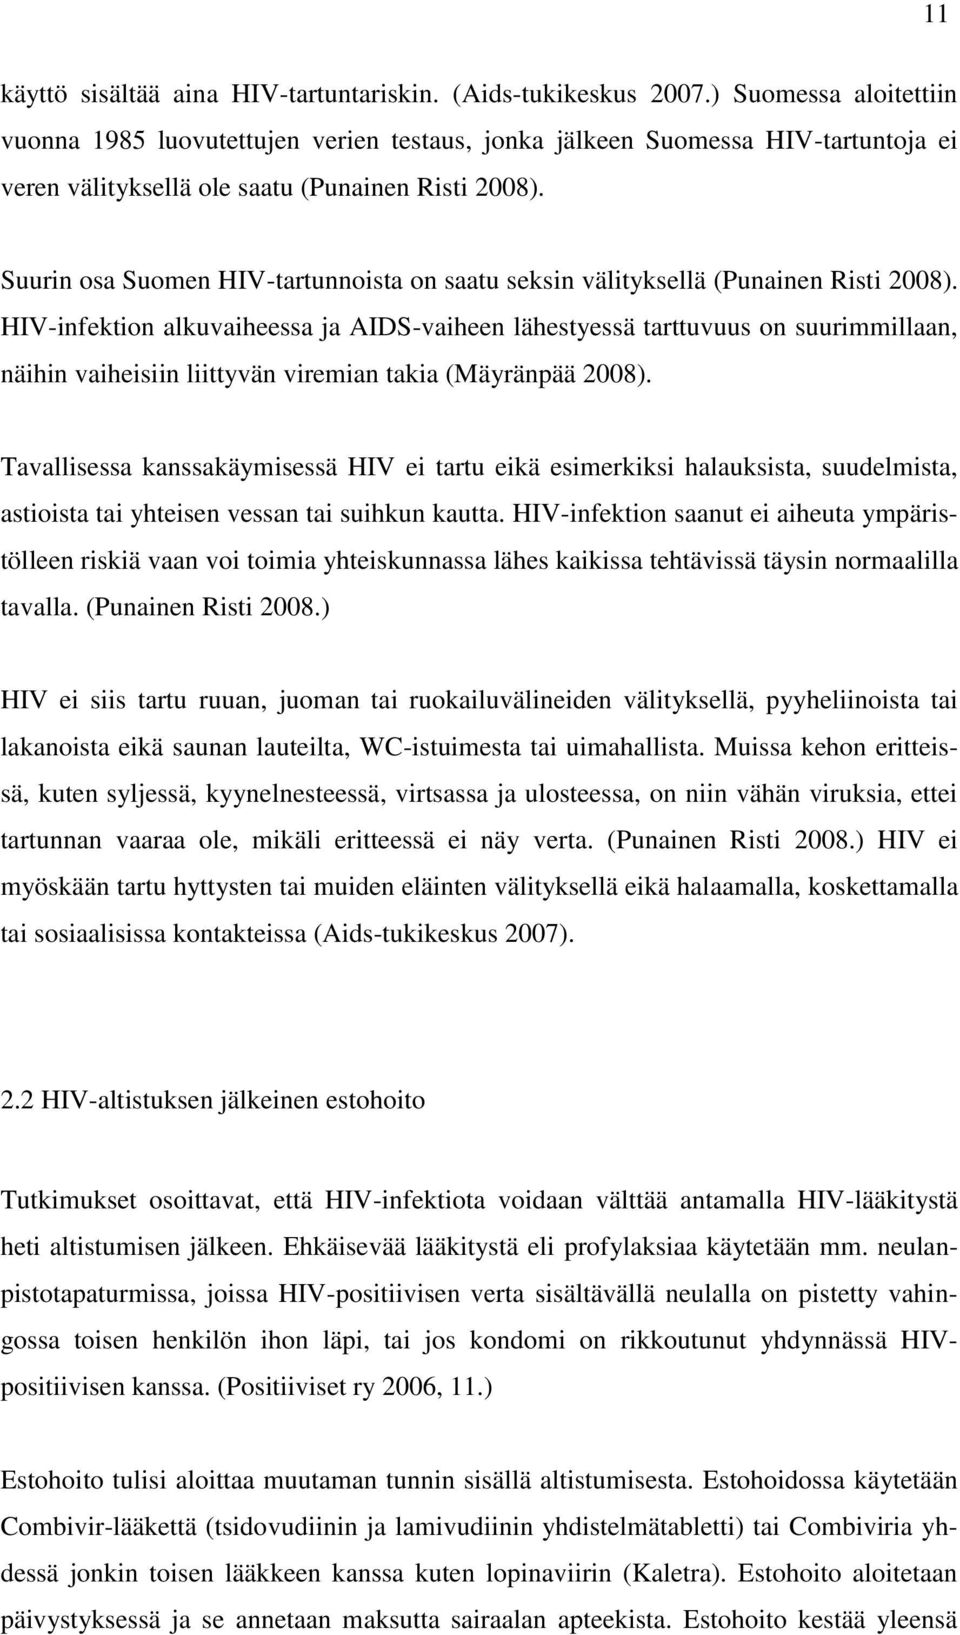 Suurin osa Suomen HIV-tartunnoista on saatu seksin välityksellä (Punainen Risti 2008).